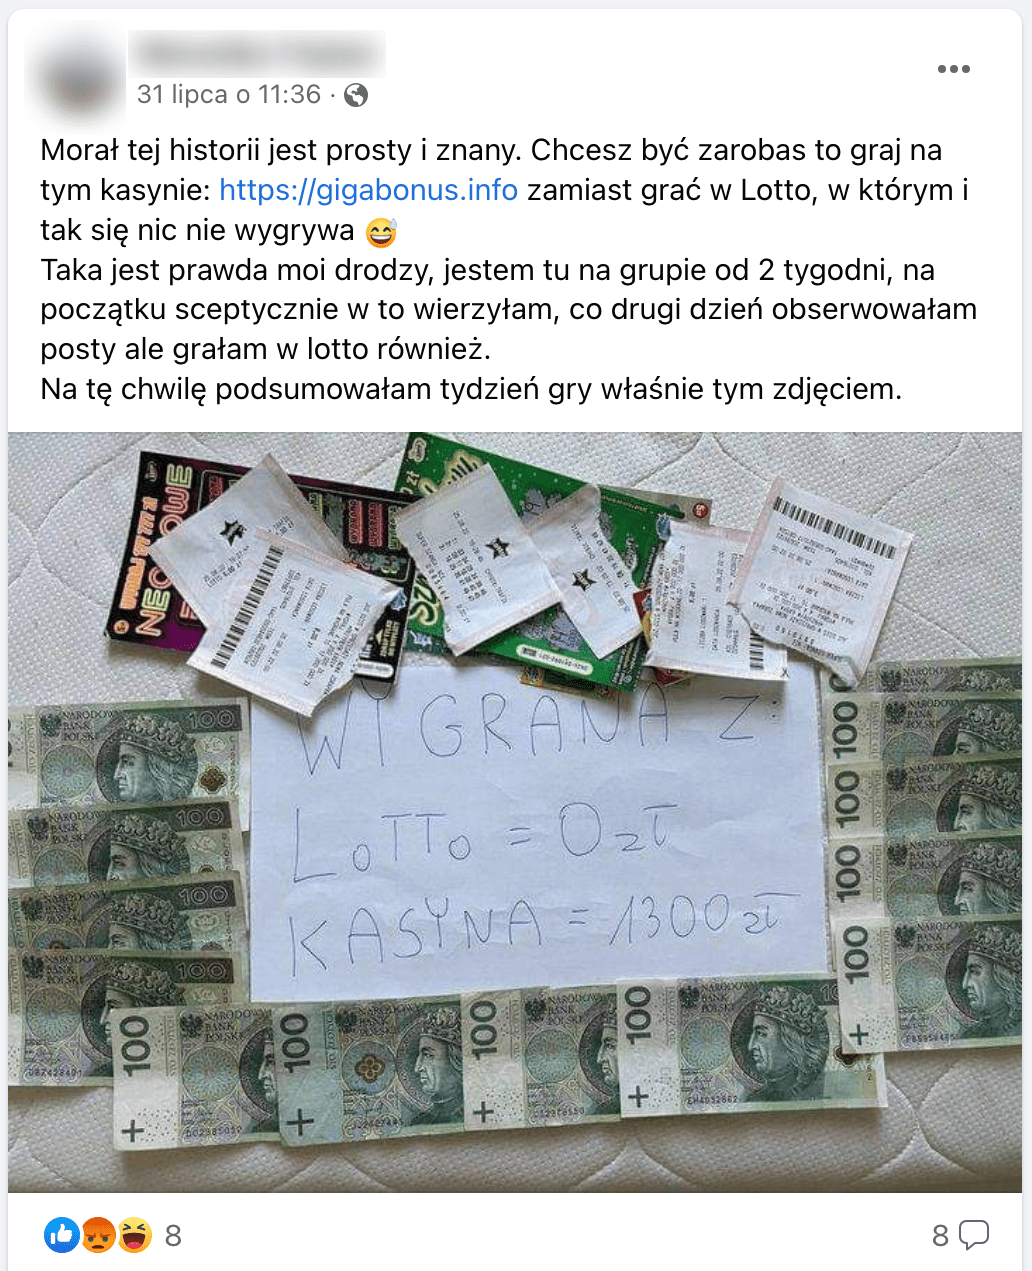 Zrzut ekranu posta na Facebooku. Na załączonym zdjęciu znajdują się banknoty i kupony Lotto. Położono też kartkę z napisem: „WYGRANA Z LoTTo = 0 zł KASYNA = 1300 zł”.